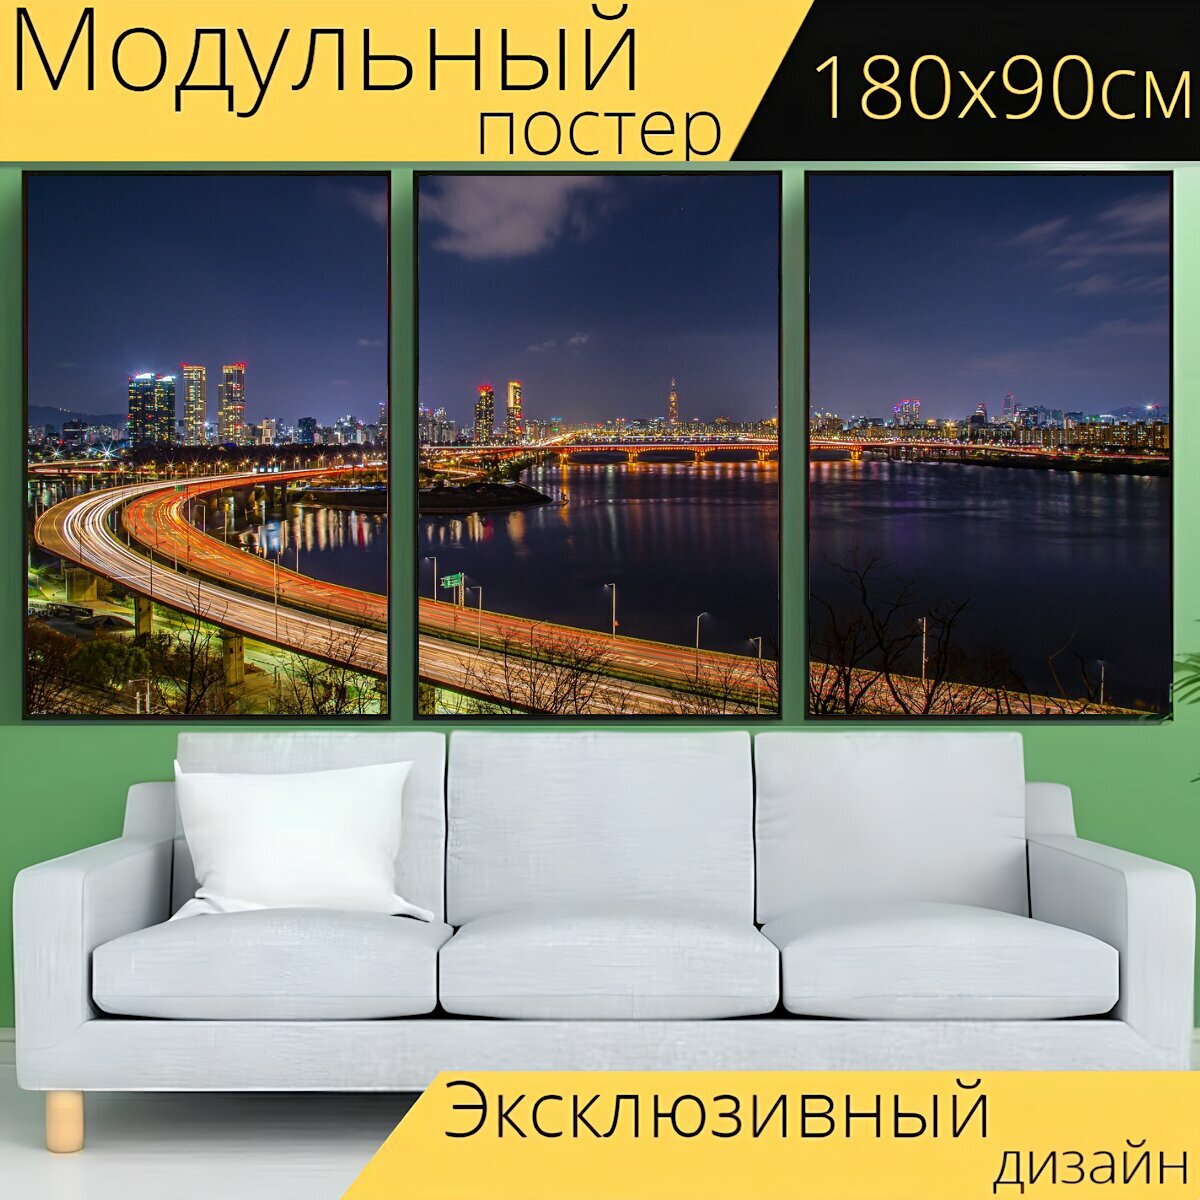 Модульный постер "Ночная точка зрения, река, город" 180 x 90 см. для интерьера